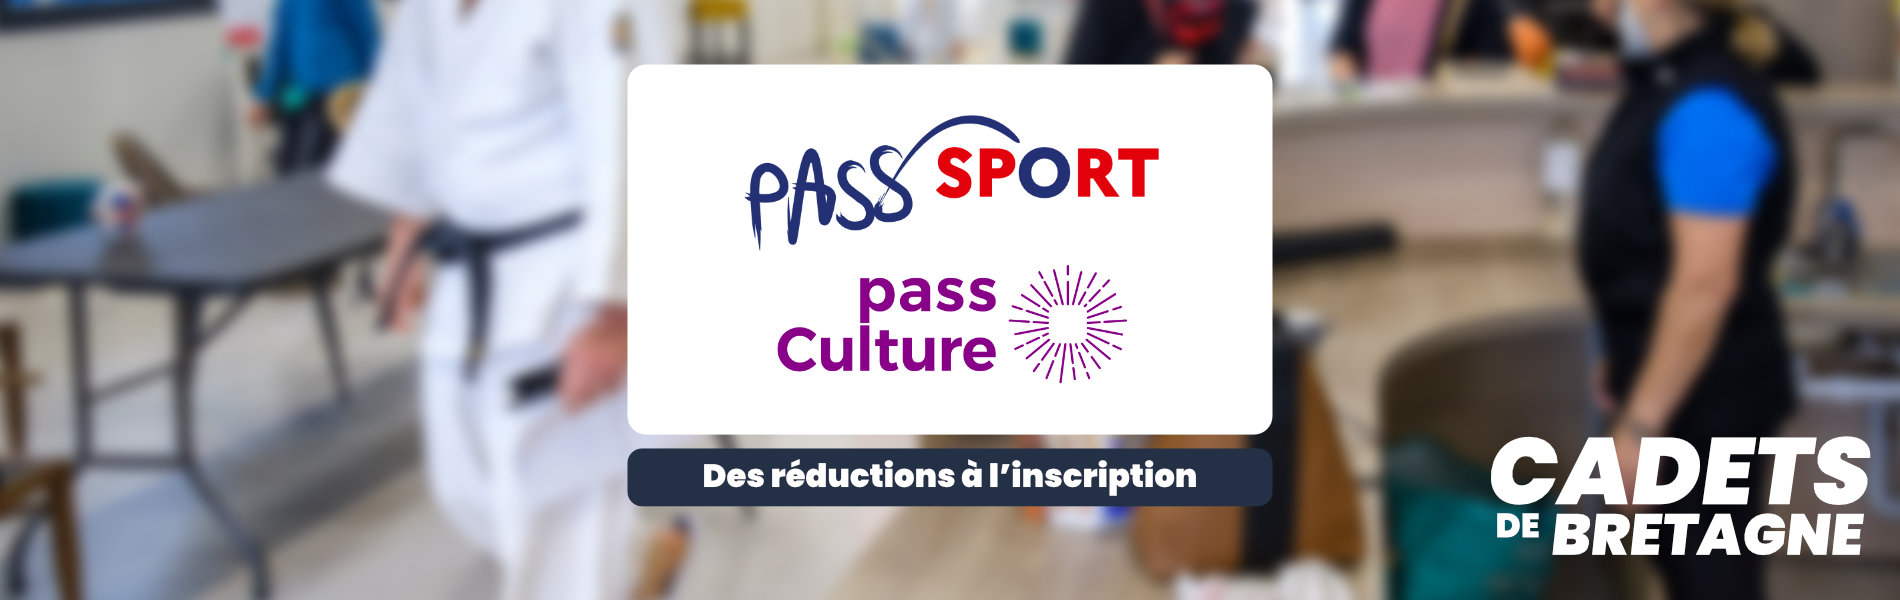 Pass'Sport et Pass Culture : deux dispositifs jeunesse pour bénéficier de réductions à l'inscription